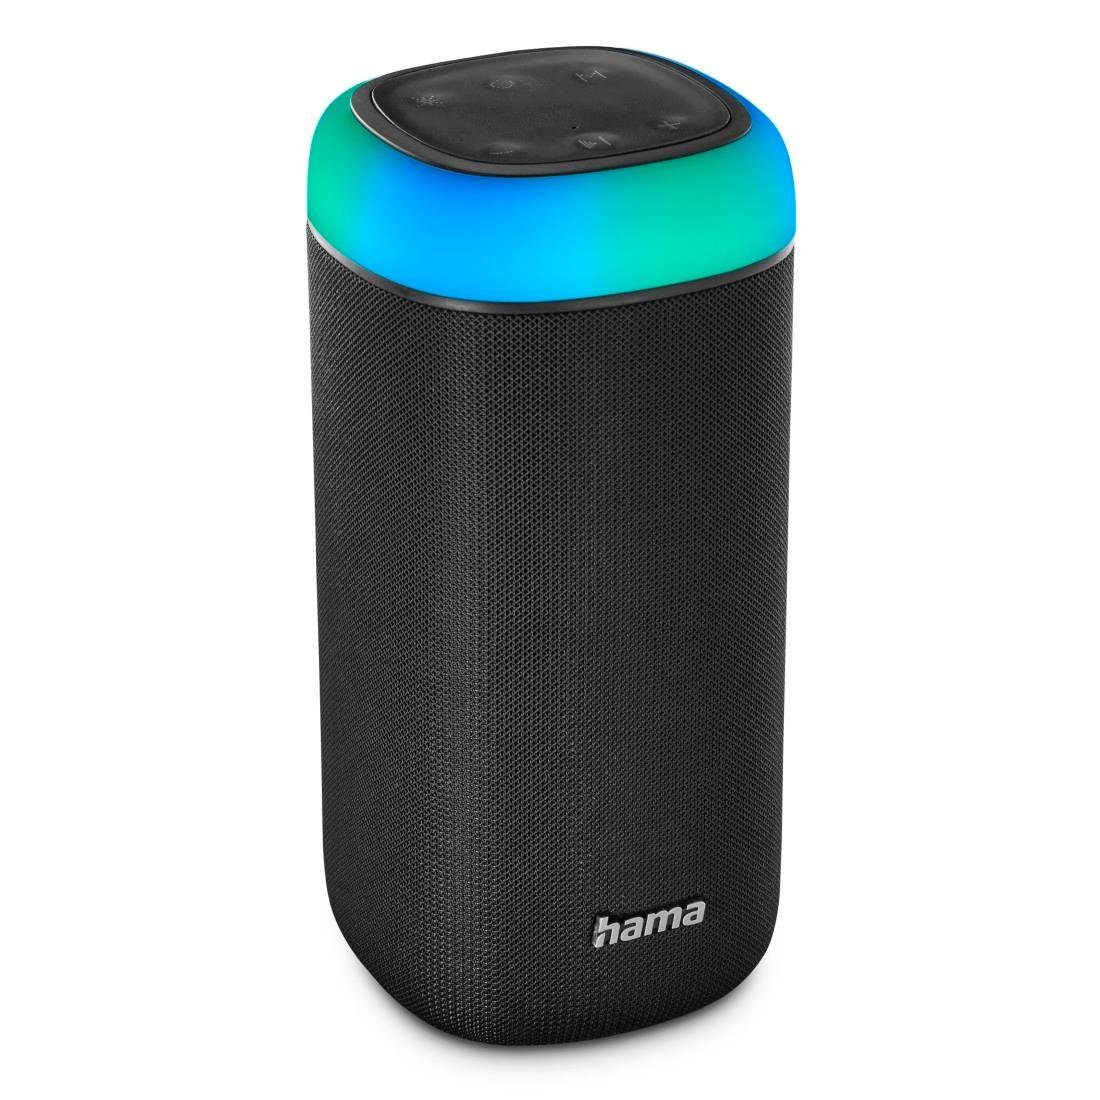 Hama Bluetooth Box spritzwassergeschützt Xtra 2.0 Bass LED schwarz Shine 360ᵒ Sound Bass,360ᵒ Bluetooth-Lautsprecher Sound) (Freisprechanlage,Xtra